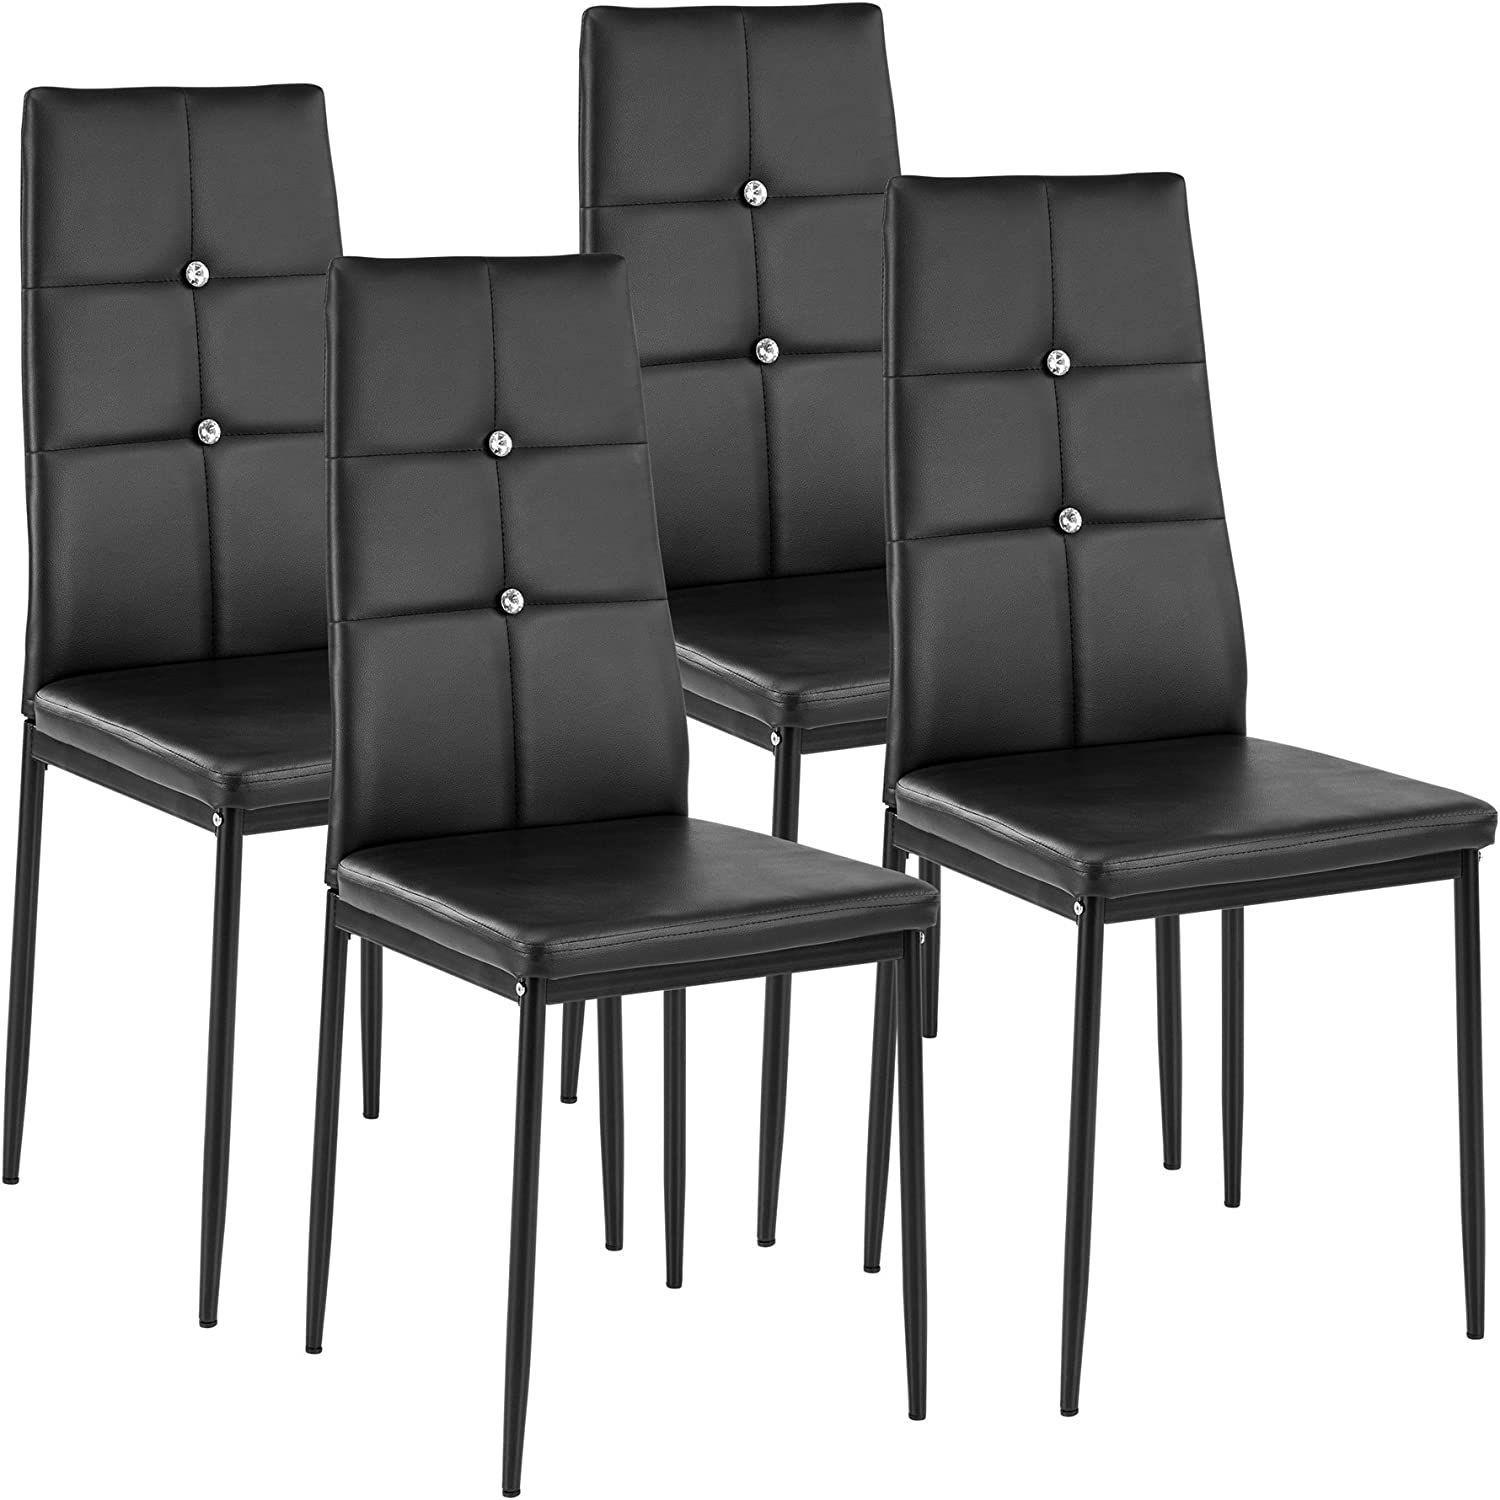 WISOICE Комплект стульев WISOICE / чёрный с кристаллами / мягкое сидение, искусственная кожа, металлические ножки, 4 шт.